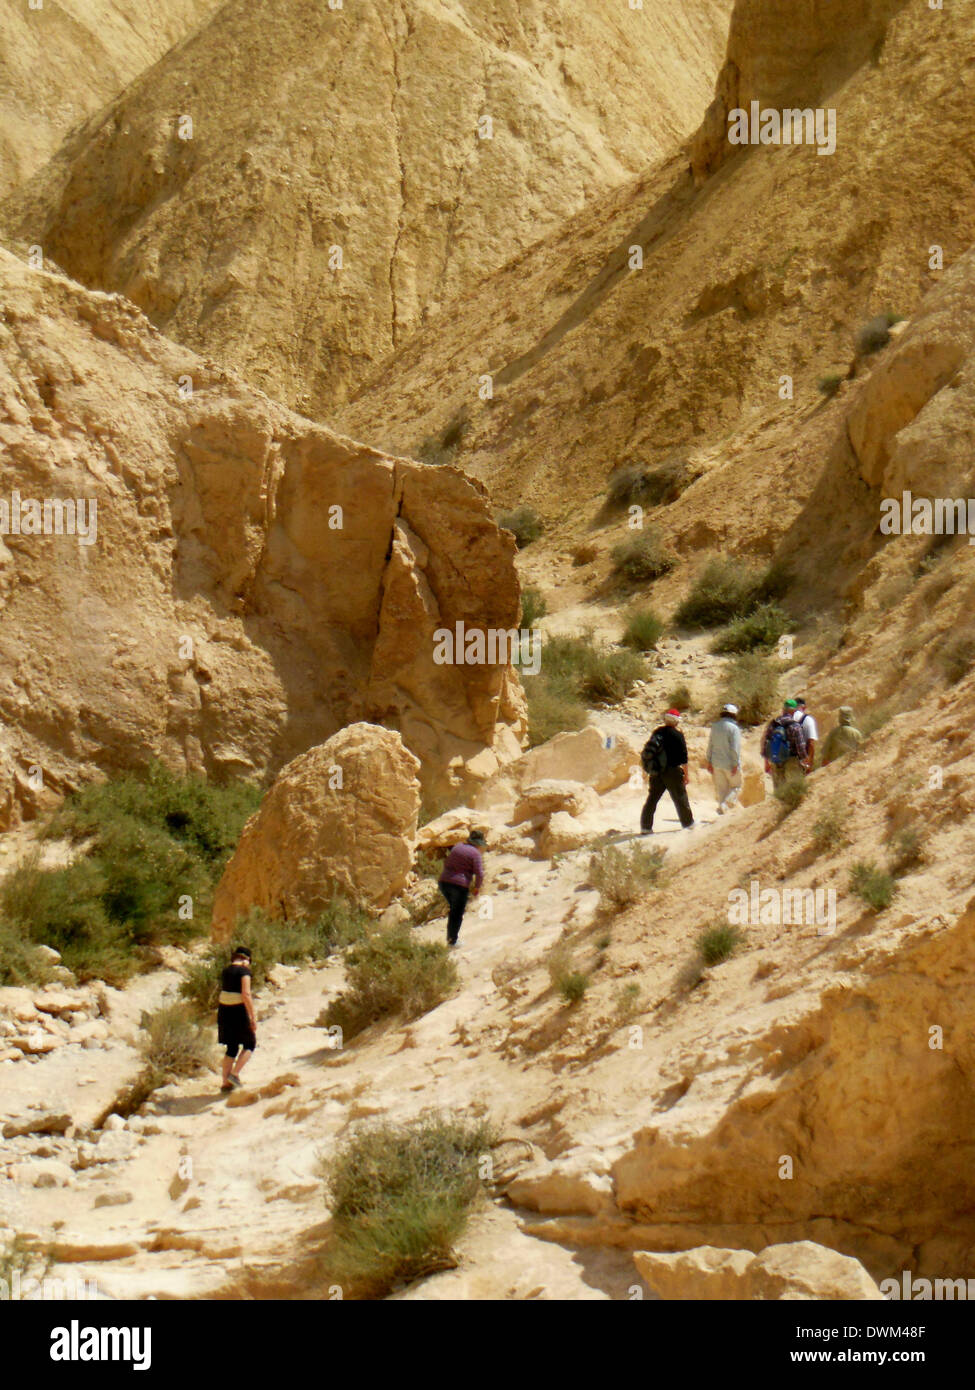 Impressioning trekkingtours sono possibili nelle valli a secco tra le rocce della Nahalzin, un deserto in South-Israel - Aprile 2013. Foto Stock